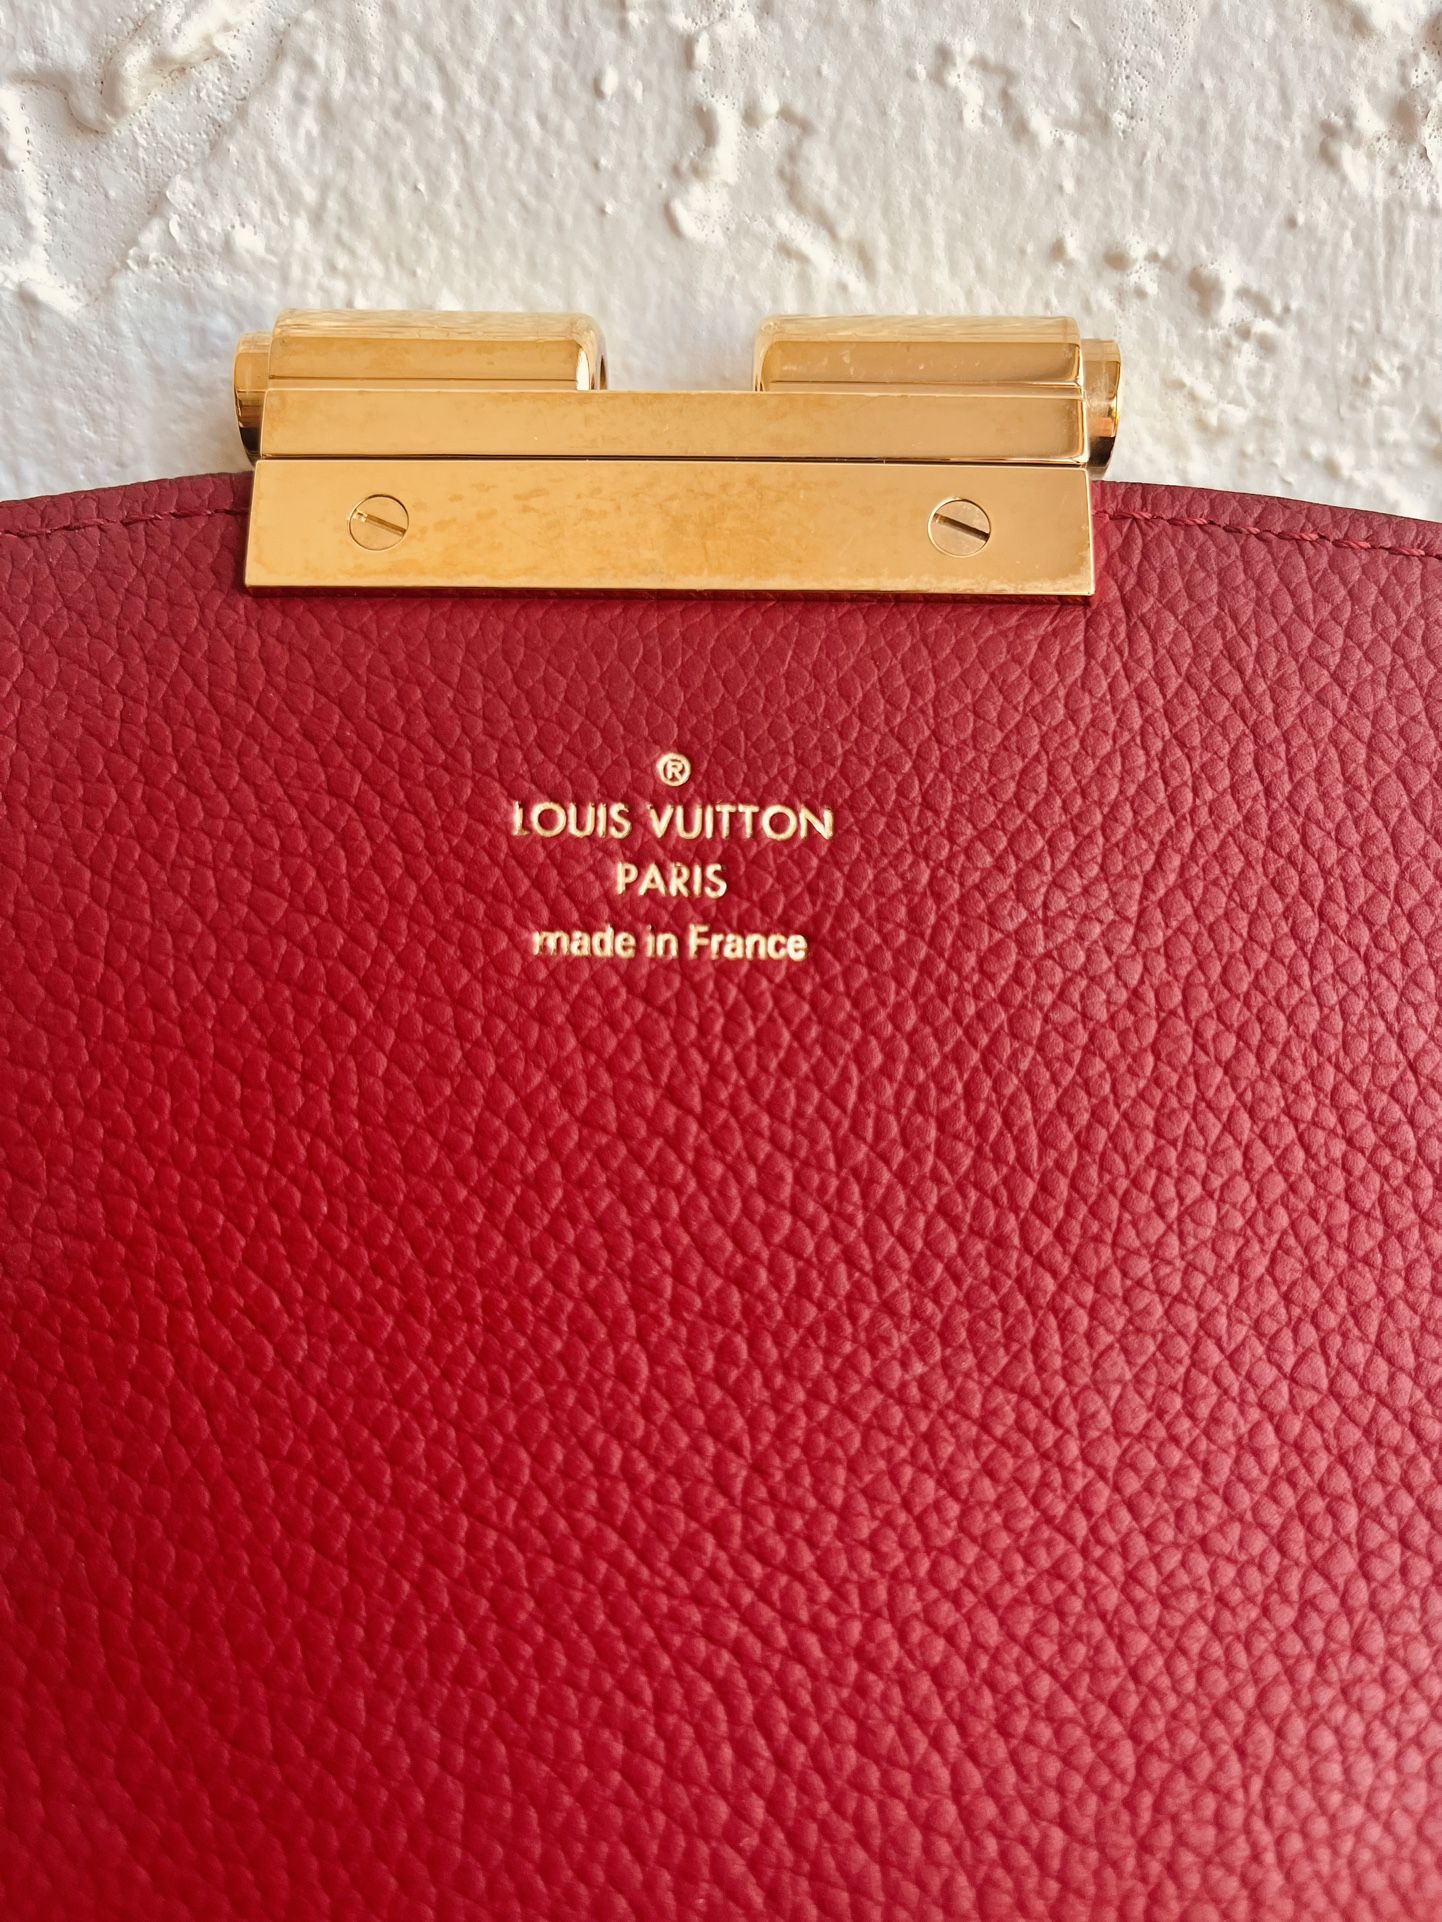 Louis Vuitton Gradient Monogram Noir Size S for Sale in Boca Raton, FL -  OfferUp